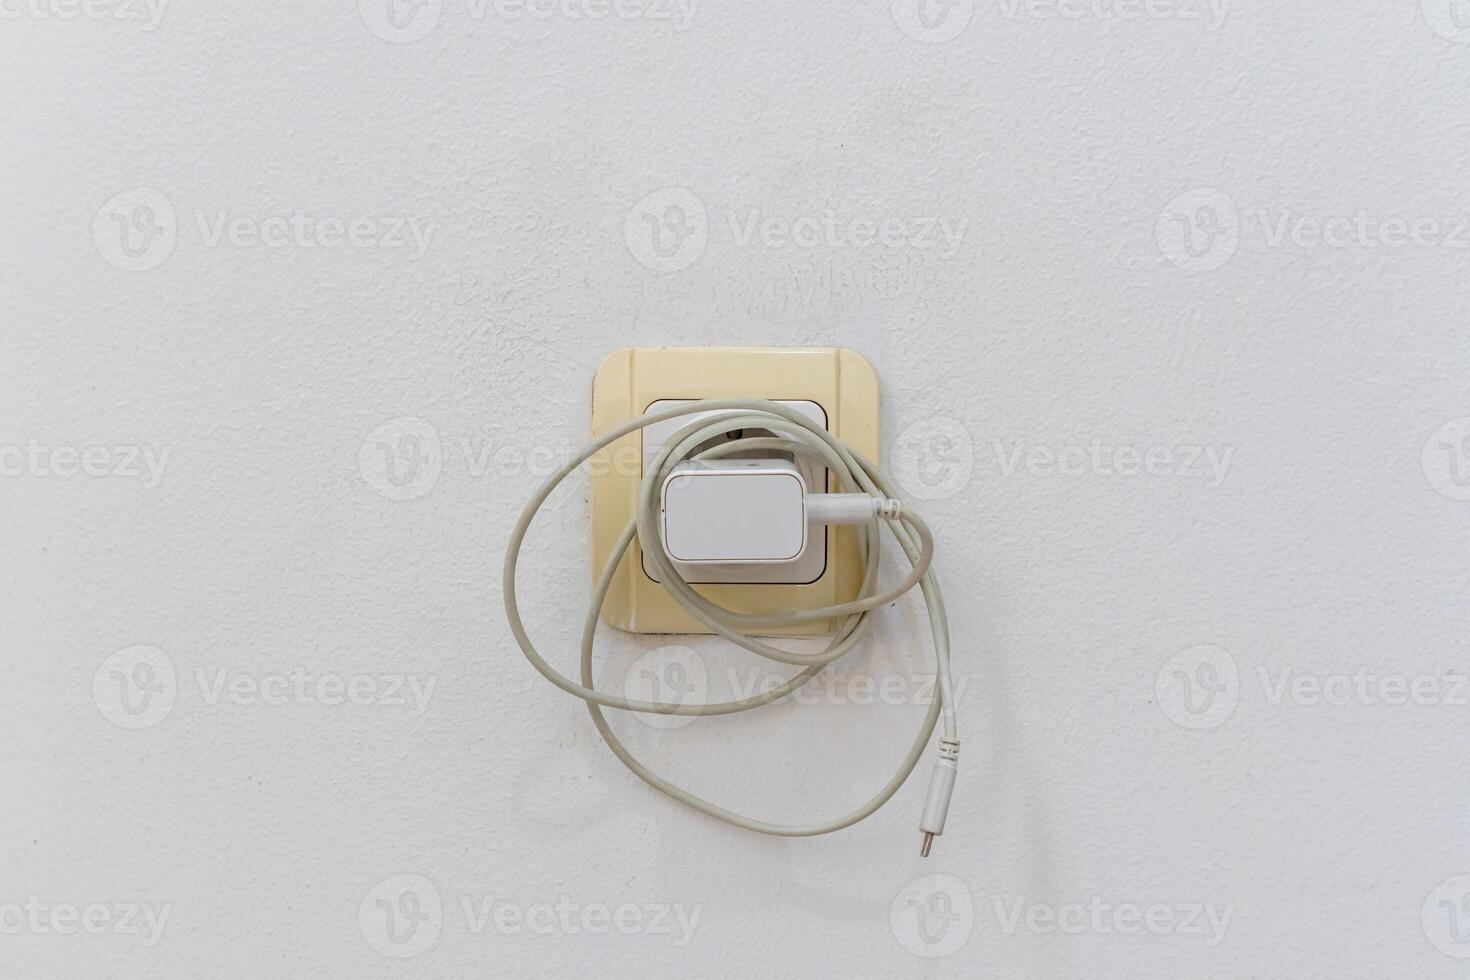 el teléfono cargador es atascado dentro el eléctrico poder enchufe en pared cuando no en usar. dejando el teléfono cargador atascado en. debilitante energía. foto